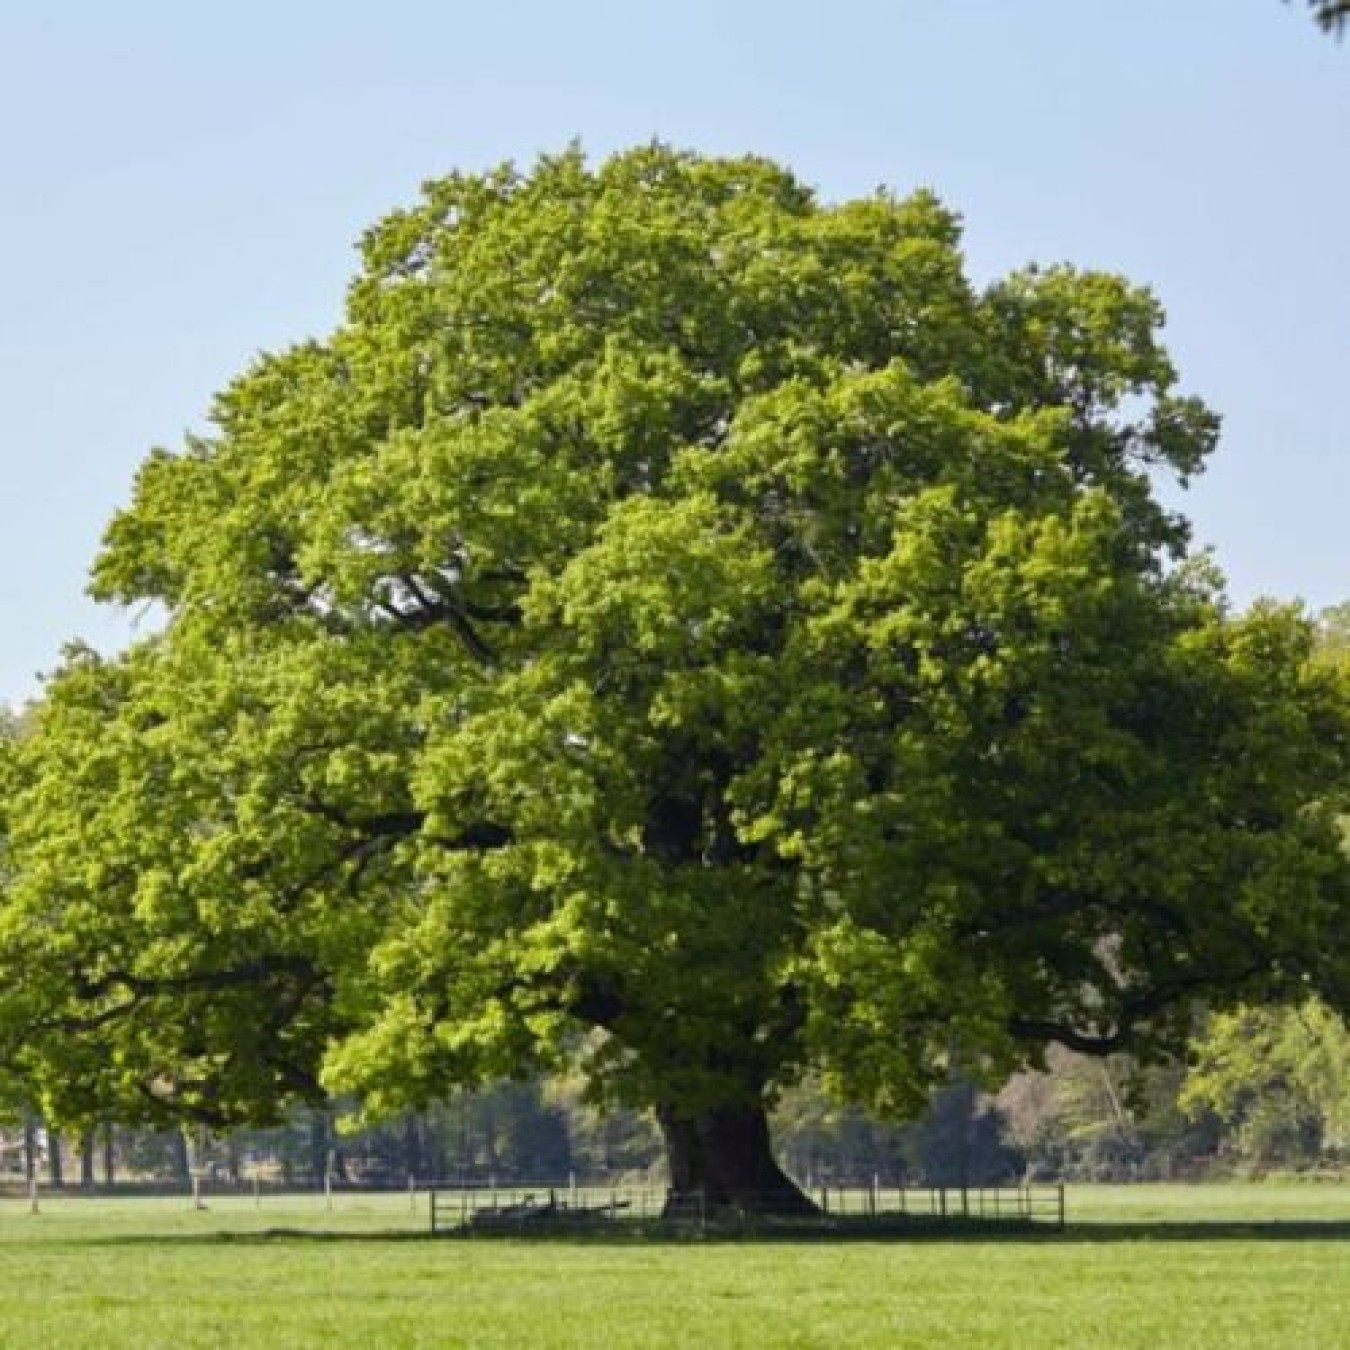 oak tree